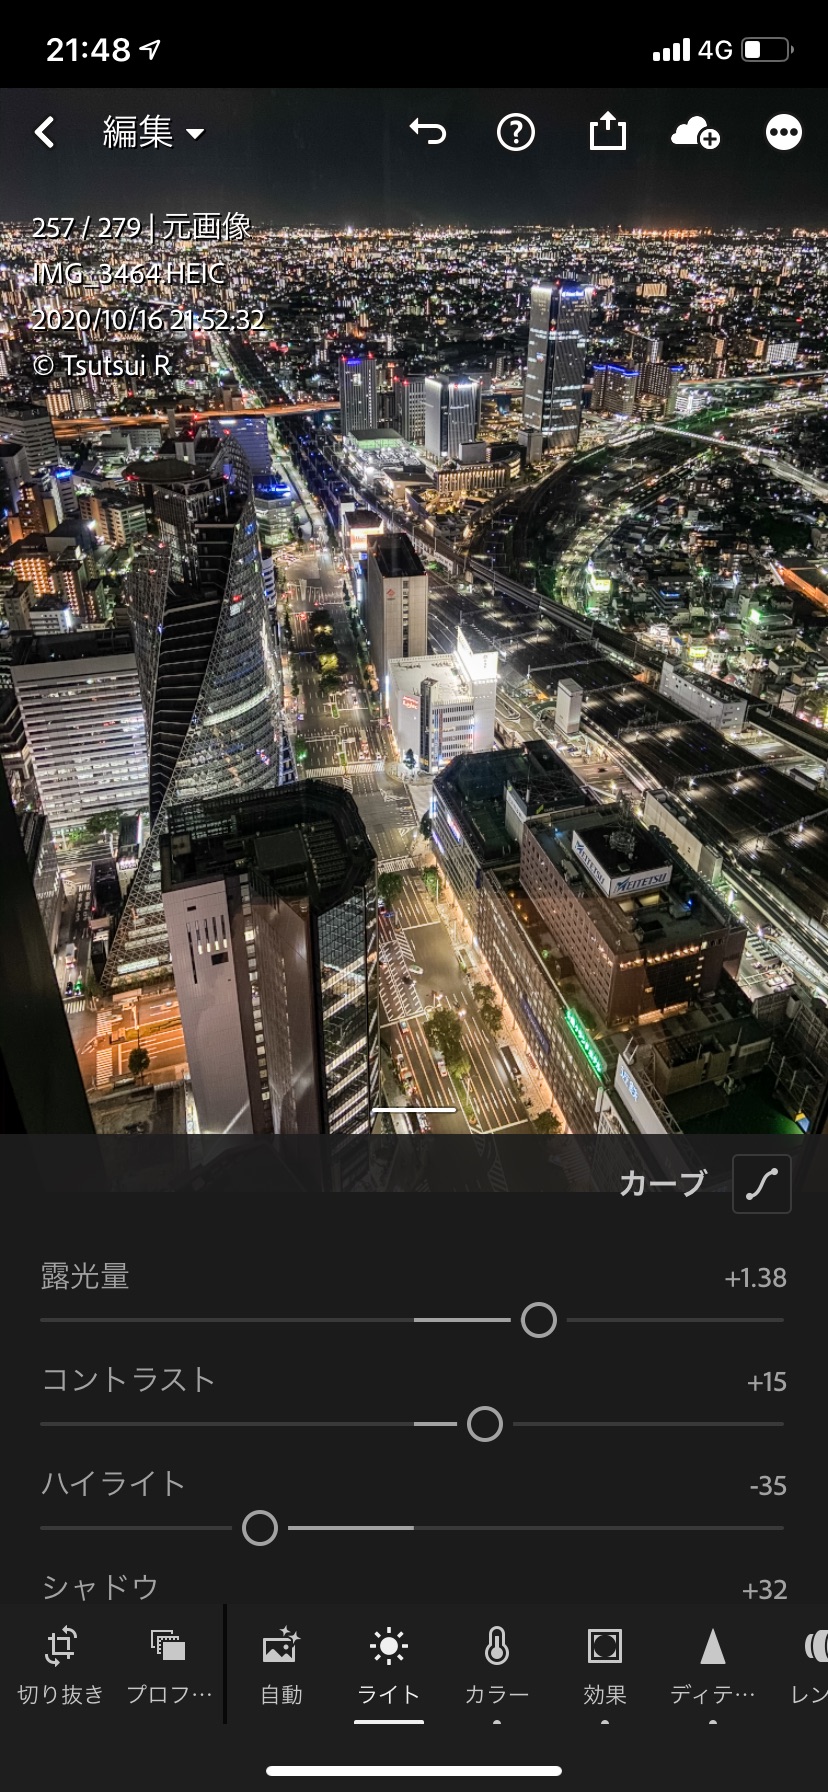 撮影アプリを使わず Iphoneで簡単に素晴らしい夜景写真を撮影 編集するコツを紹介 In スカイプロムナード ここカメ